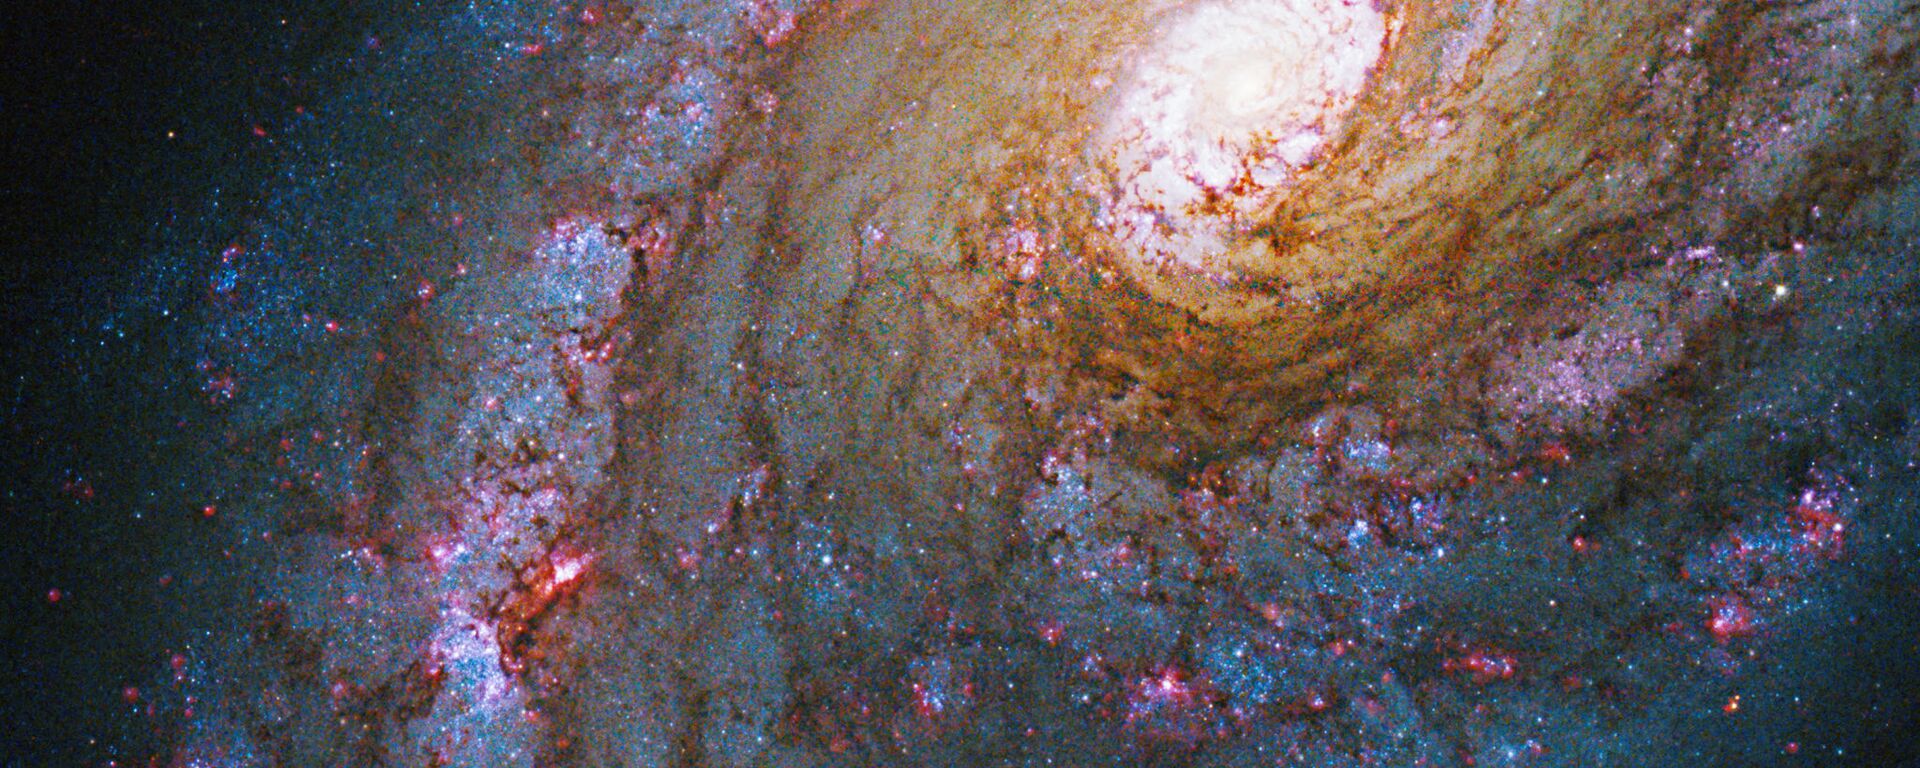 Галактика NGC 5248 в созвездии Волопас - Sputnik Армения, 1920, 17.12.2020